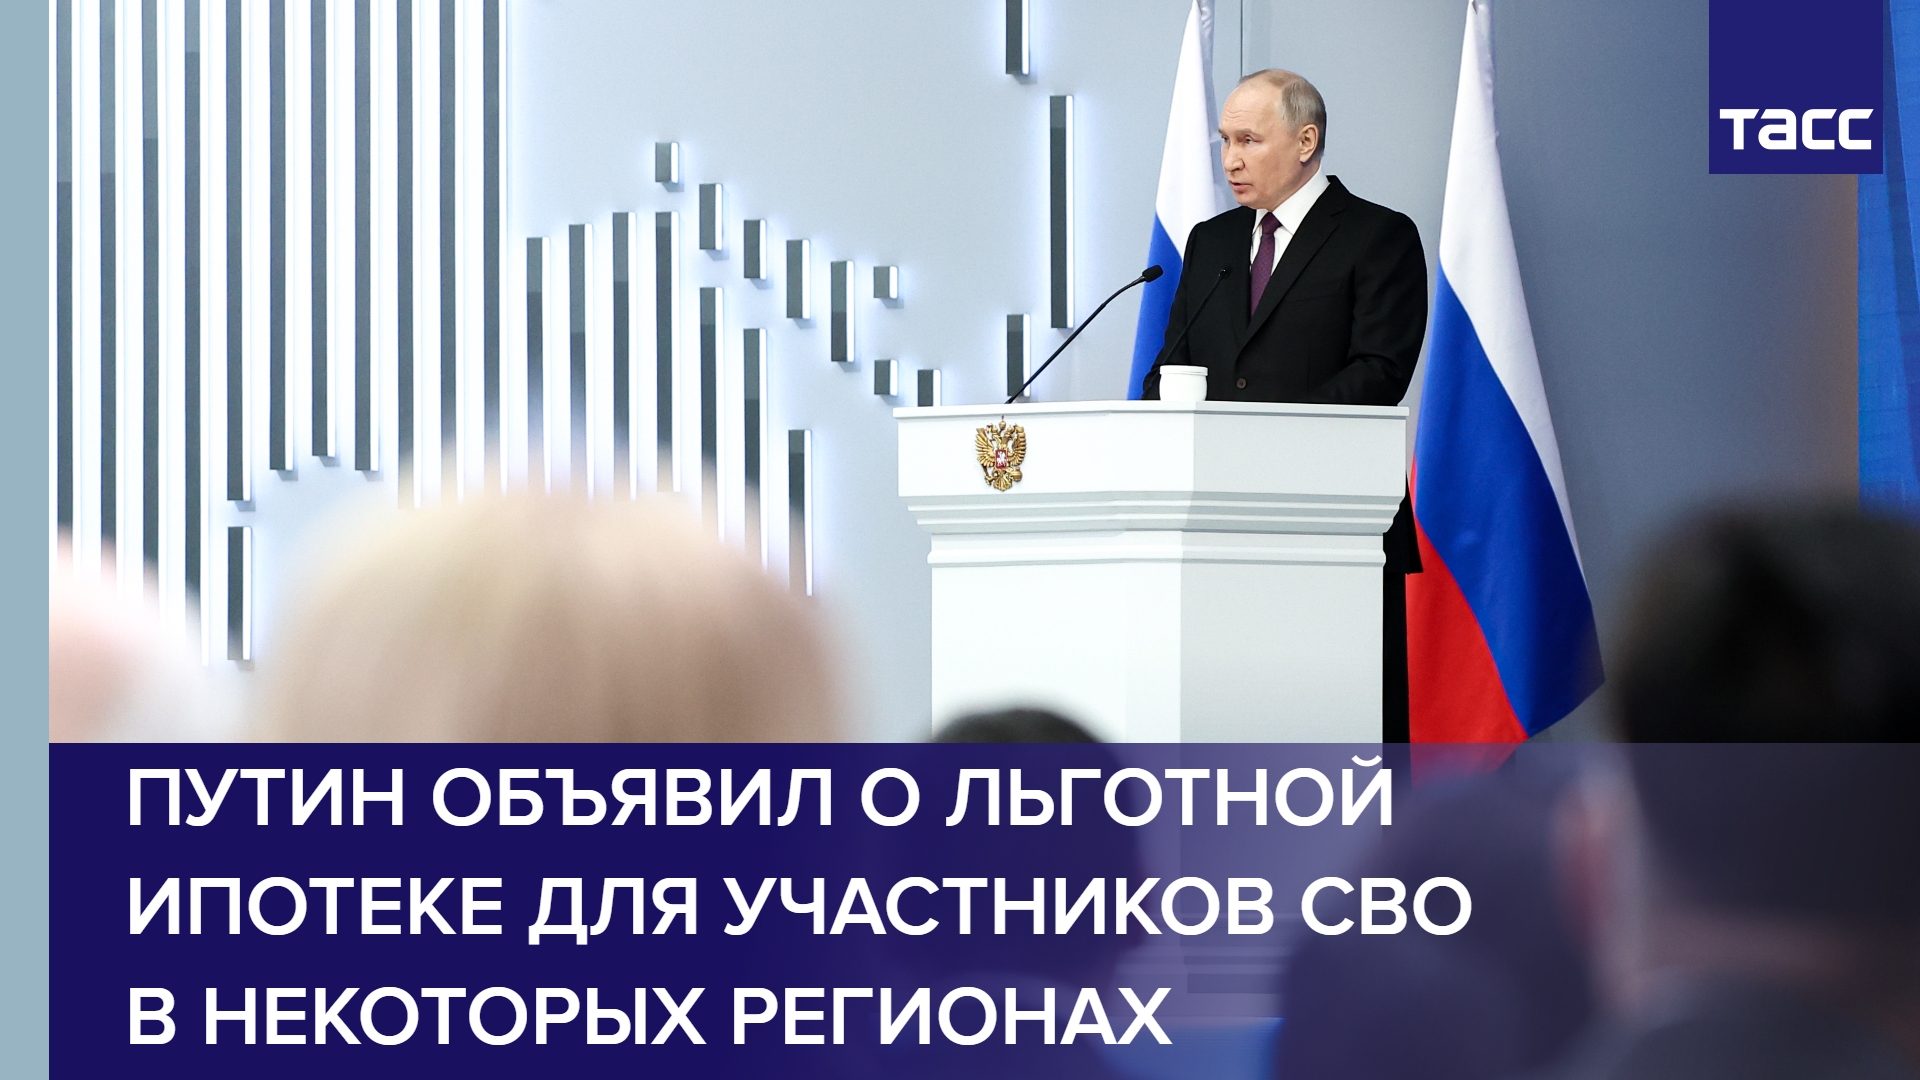 Путин объявил о льготной ипотеке для участников СВО в некоторых регионах #shorts